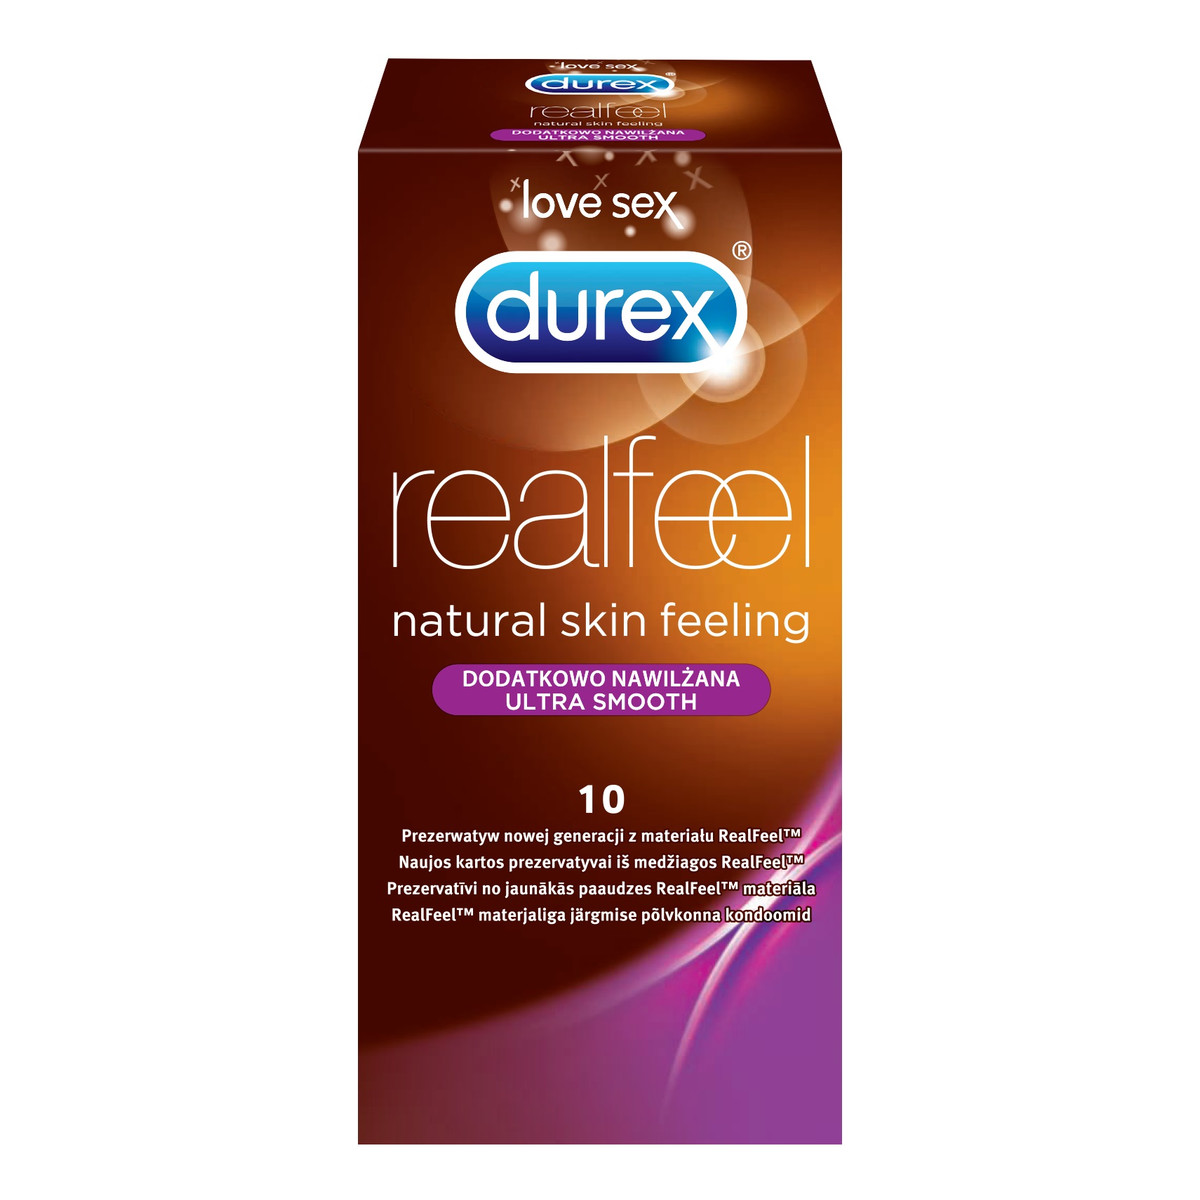 Durex Real Feel Natural Skin Feeling prezerwatywy nielateksowe dodatkowo nawilżane 10szt